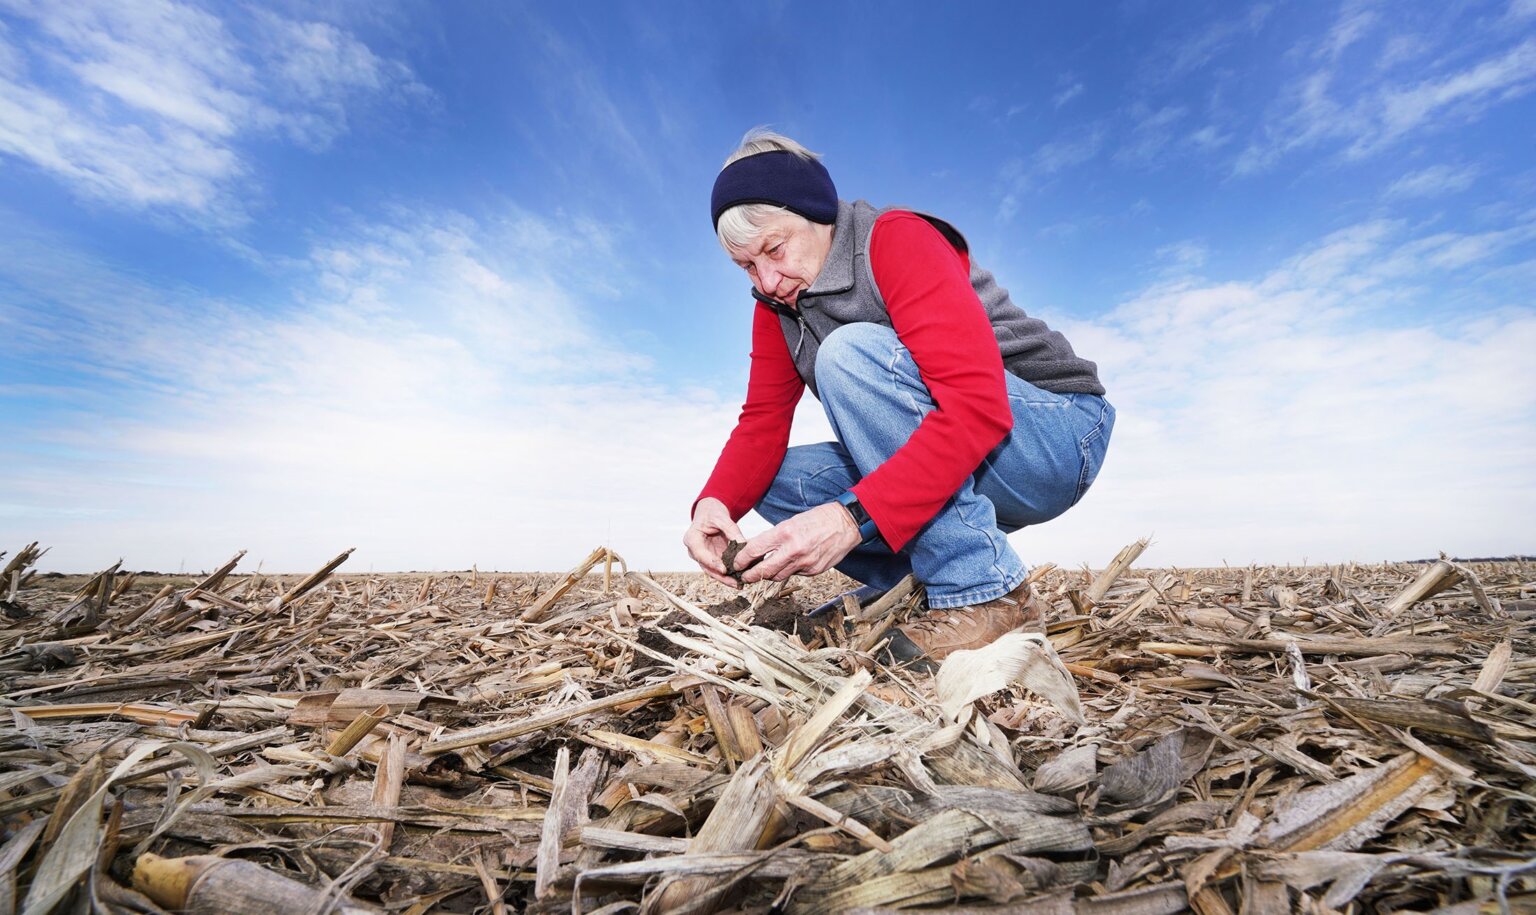 Kladivko examinanting soil in a cornfield 